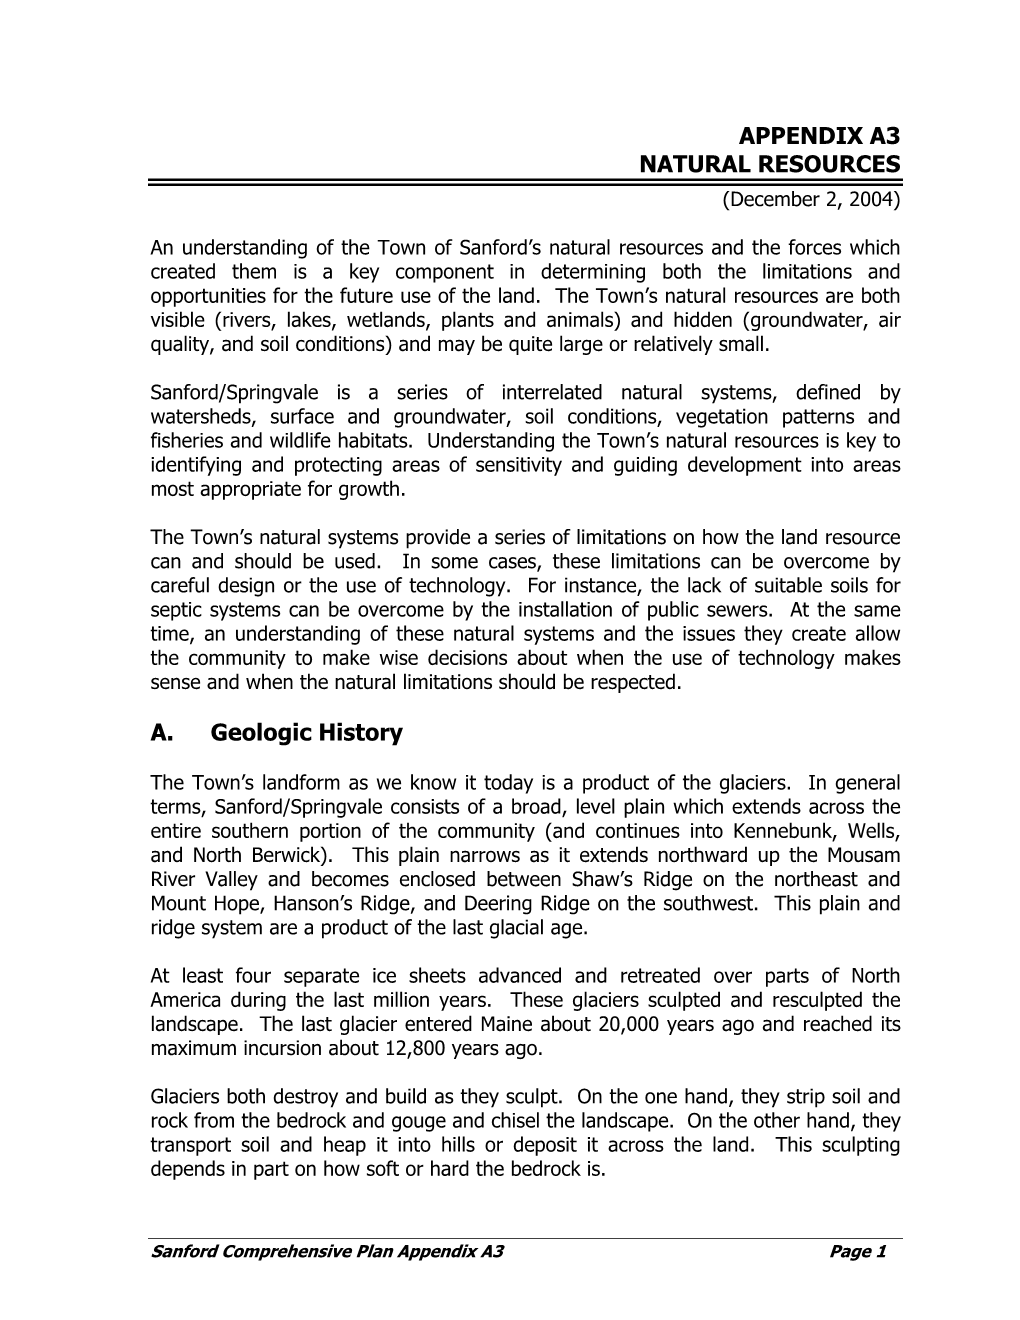 APPENDIX A3 NATURAL RESOURCES (December 2, 2004)